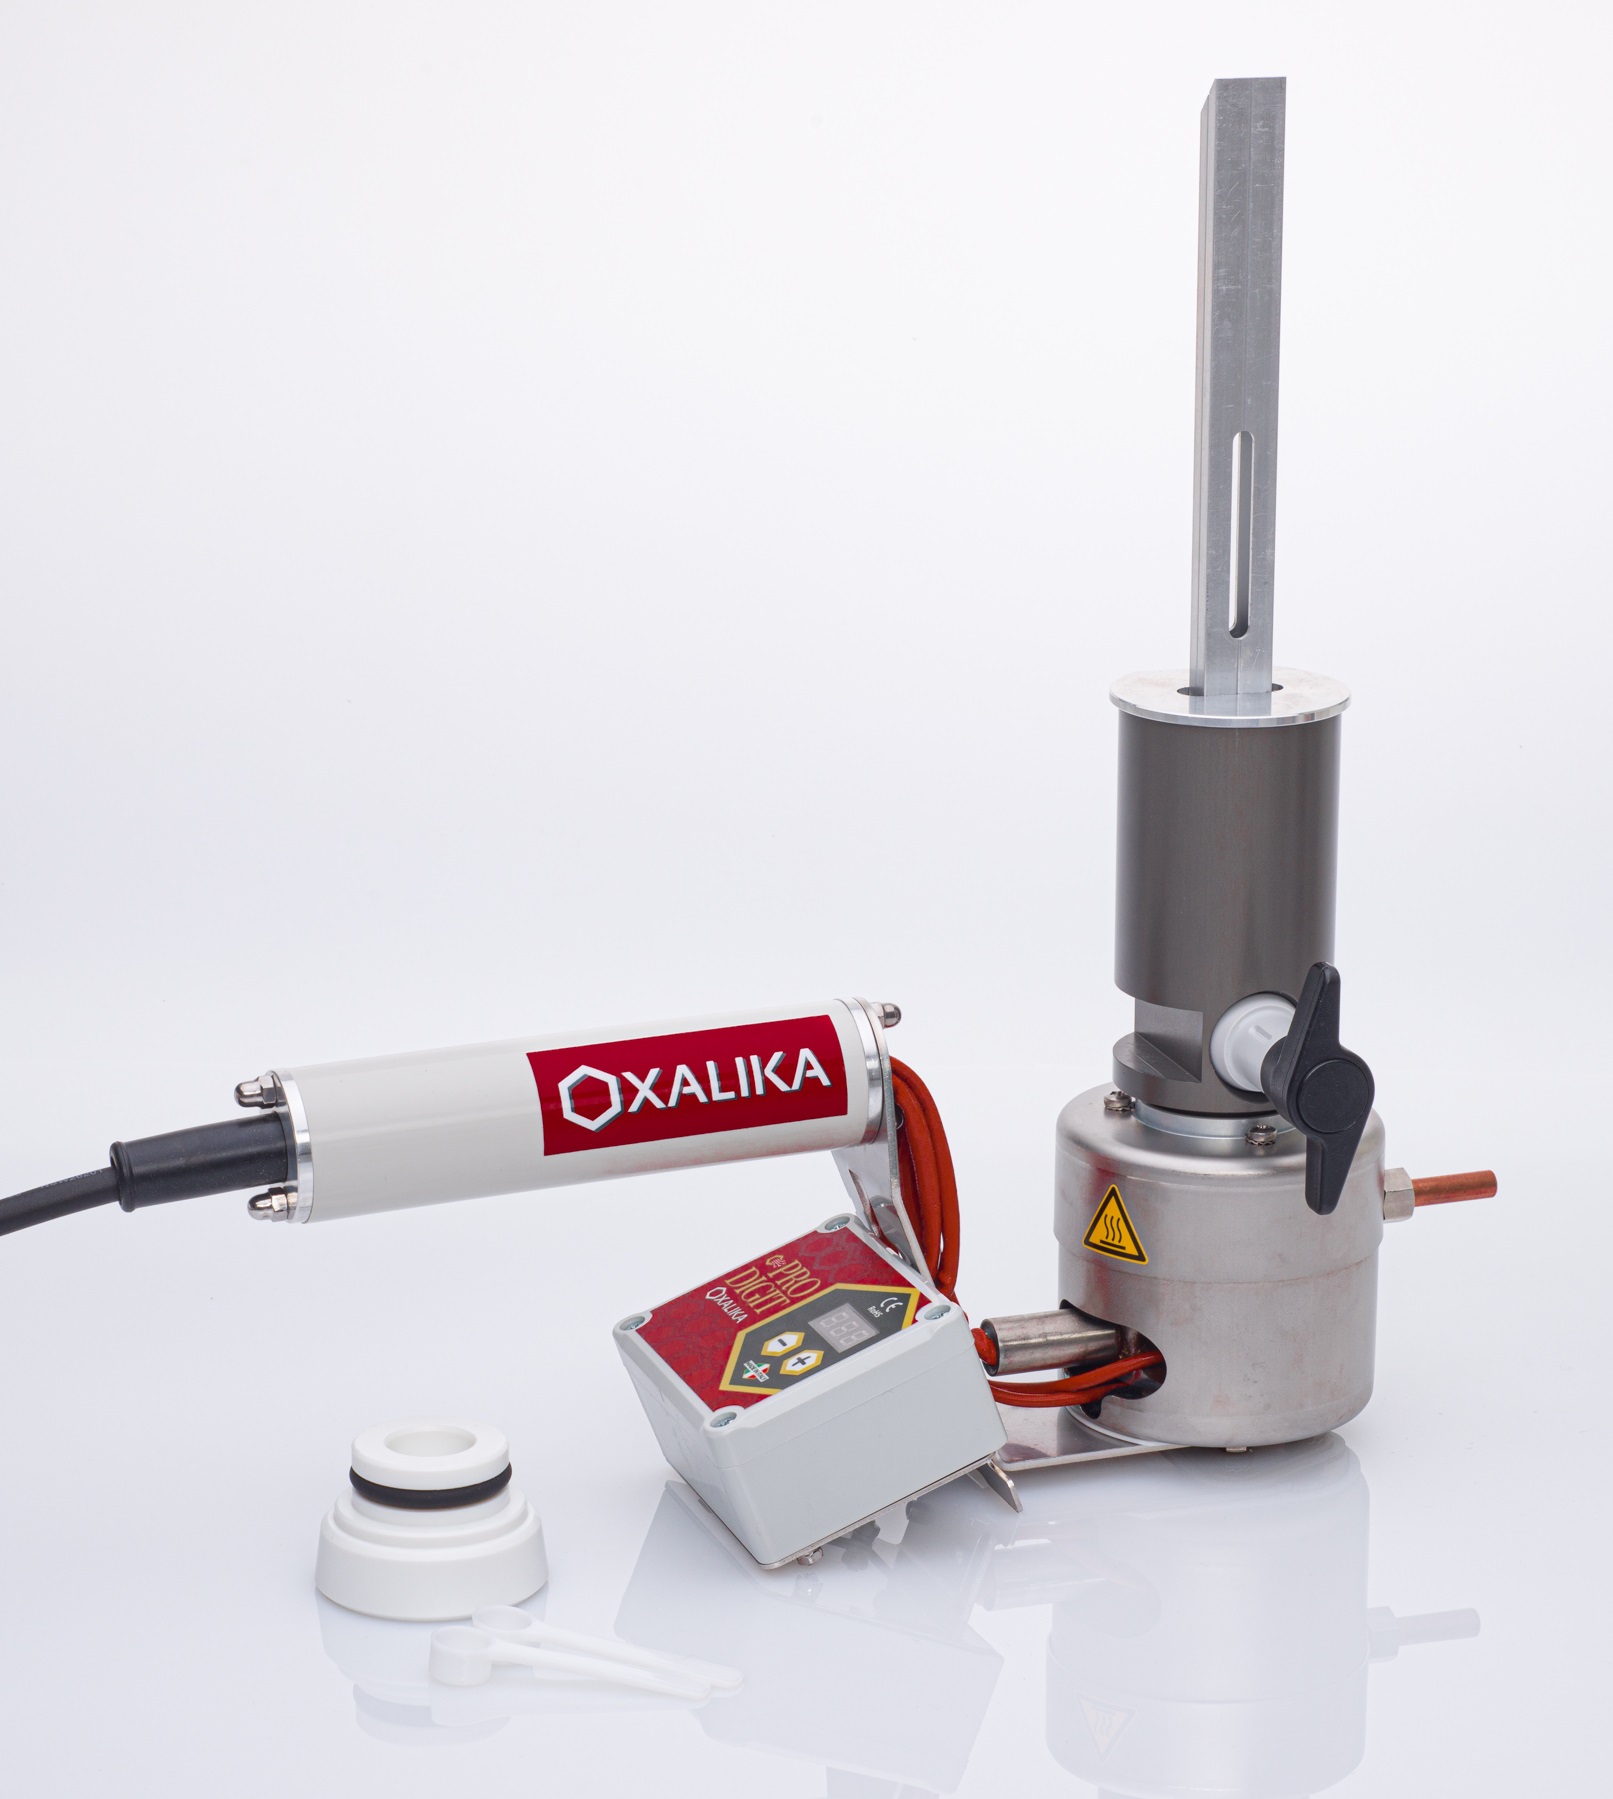 Oxalika oxálsav-szublimáló PRO FAST 220-230V digitális kijelzővel